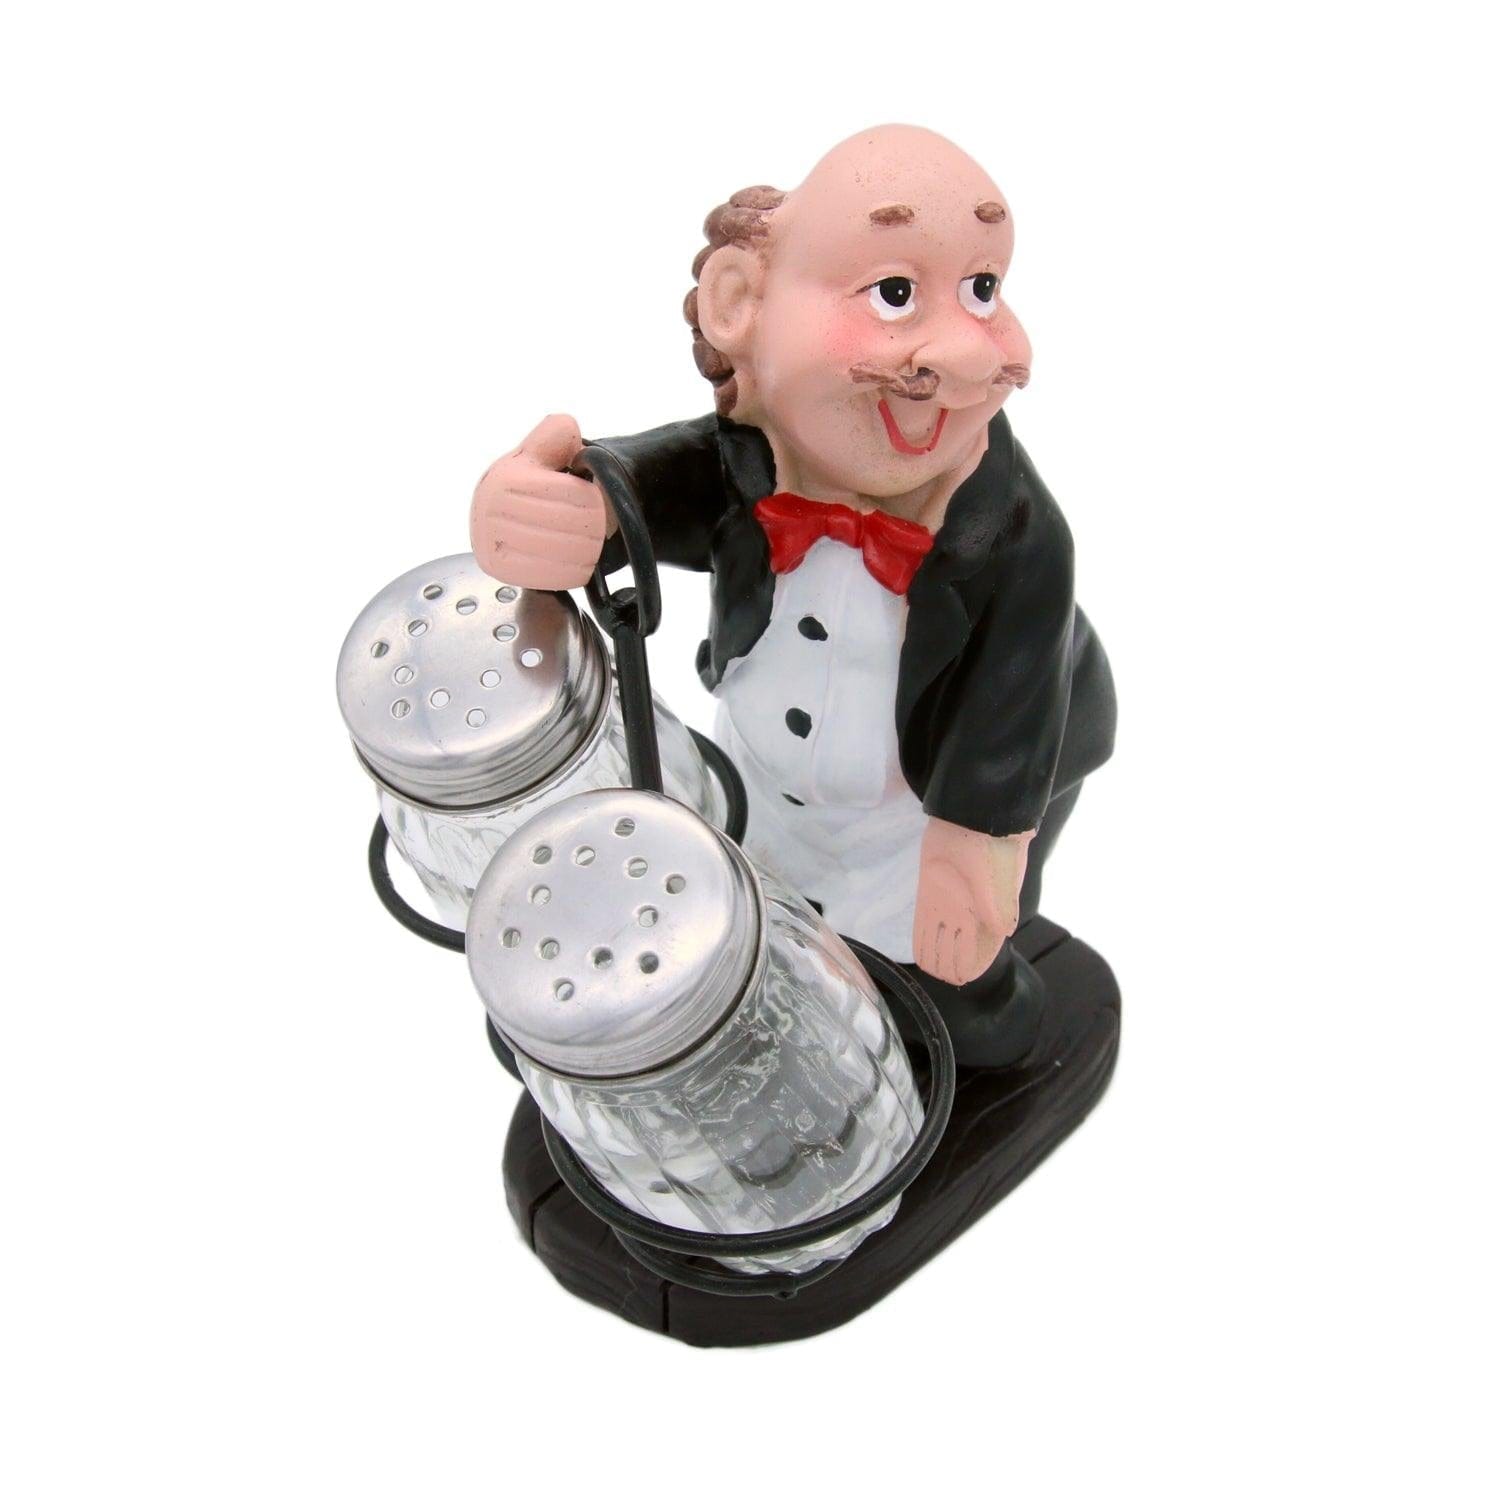 Whacky Waiter in Black Coat Figurine Resin Salt & Pepper Shakers Holder Set